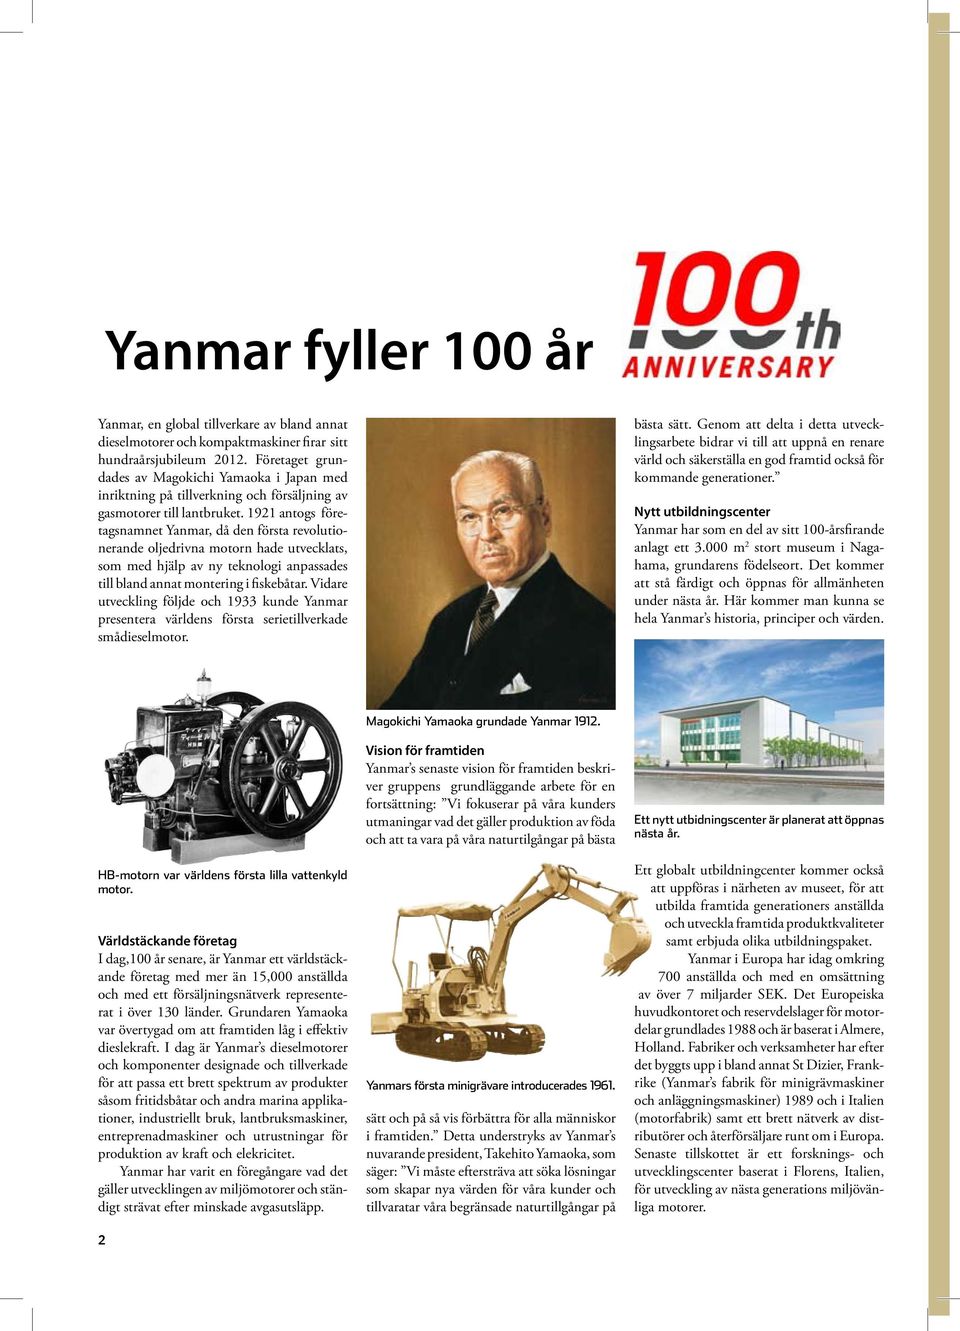 1921 antogs företagsnamnet Yanmar, då den första revolutionerande oljedrivna motorn hade utvecklats, som med hjälp av ny teknologi anpassades till bland annat montering i fiskebåtar.